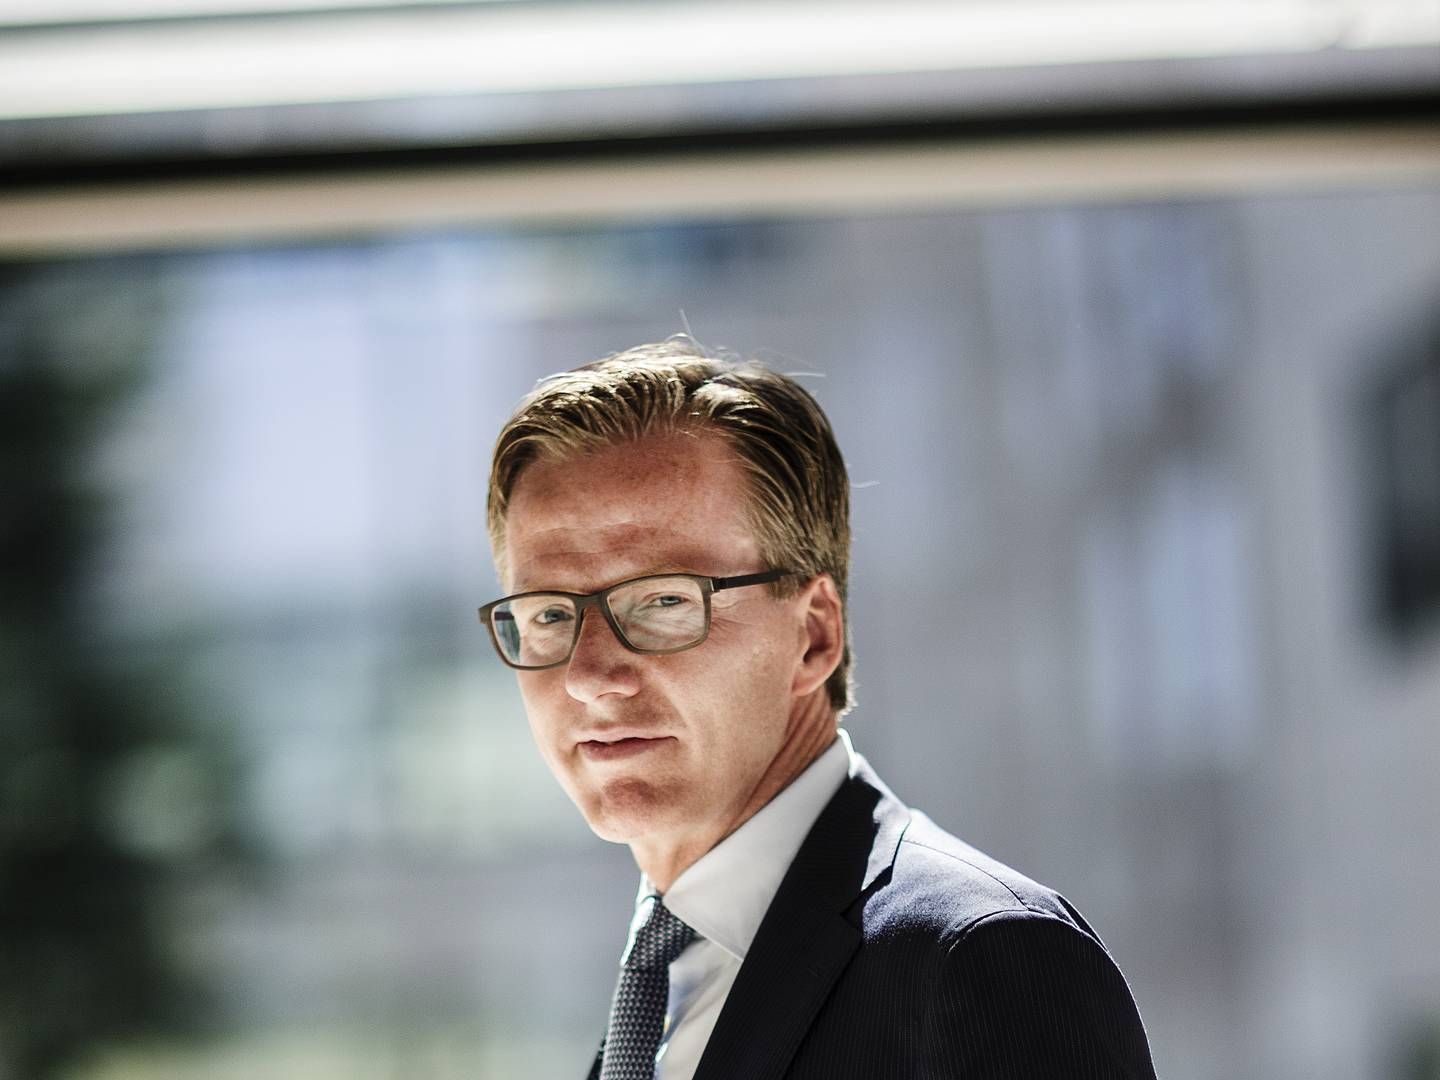 Torsten Hagen Jørgensen er landechef for Nets i Nexi-koncernen. | Foto: Stine Bidstrup/ERH